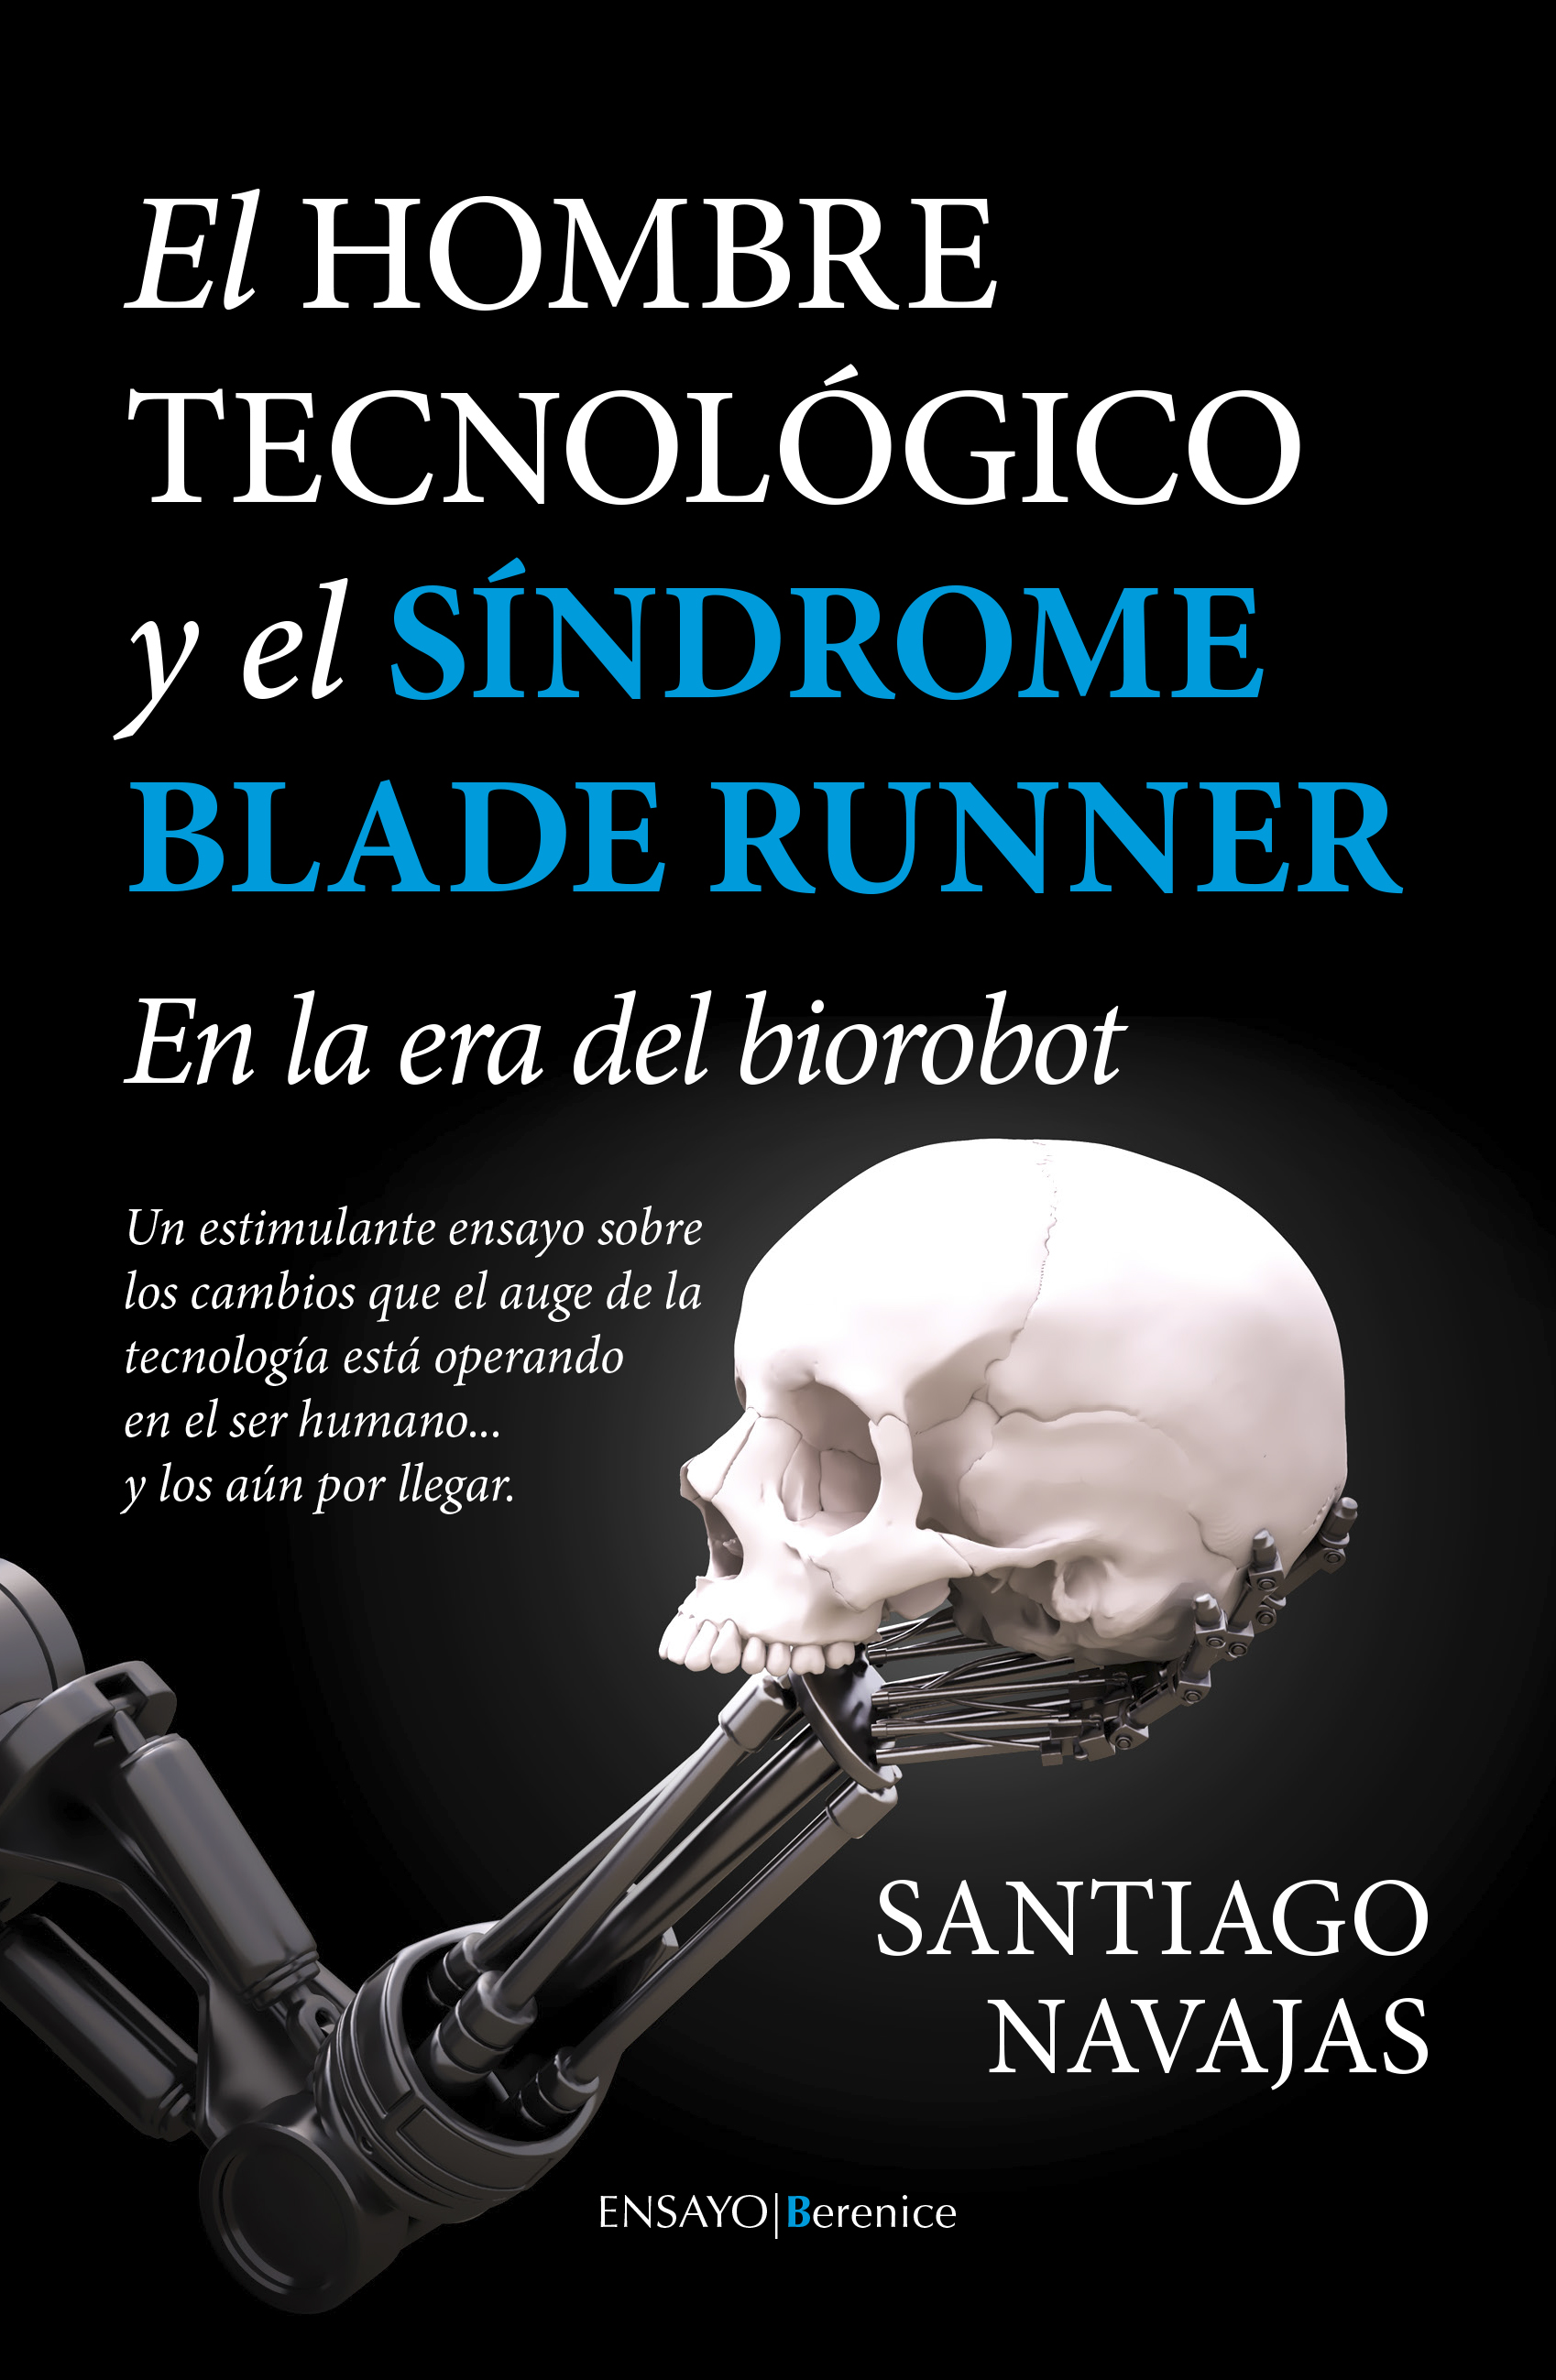 Cubierta_El Hombre Tecnológico y el síndrome Blade Runner_19mm